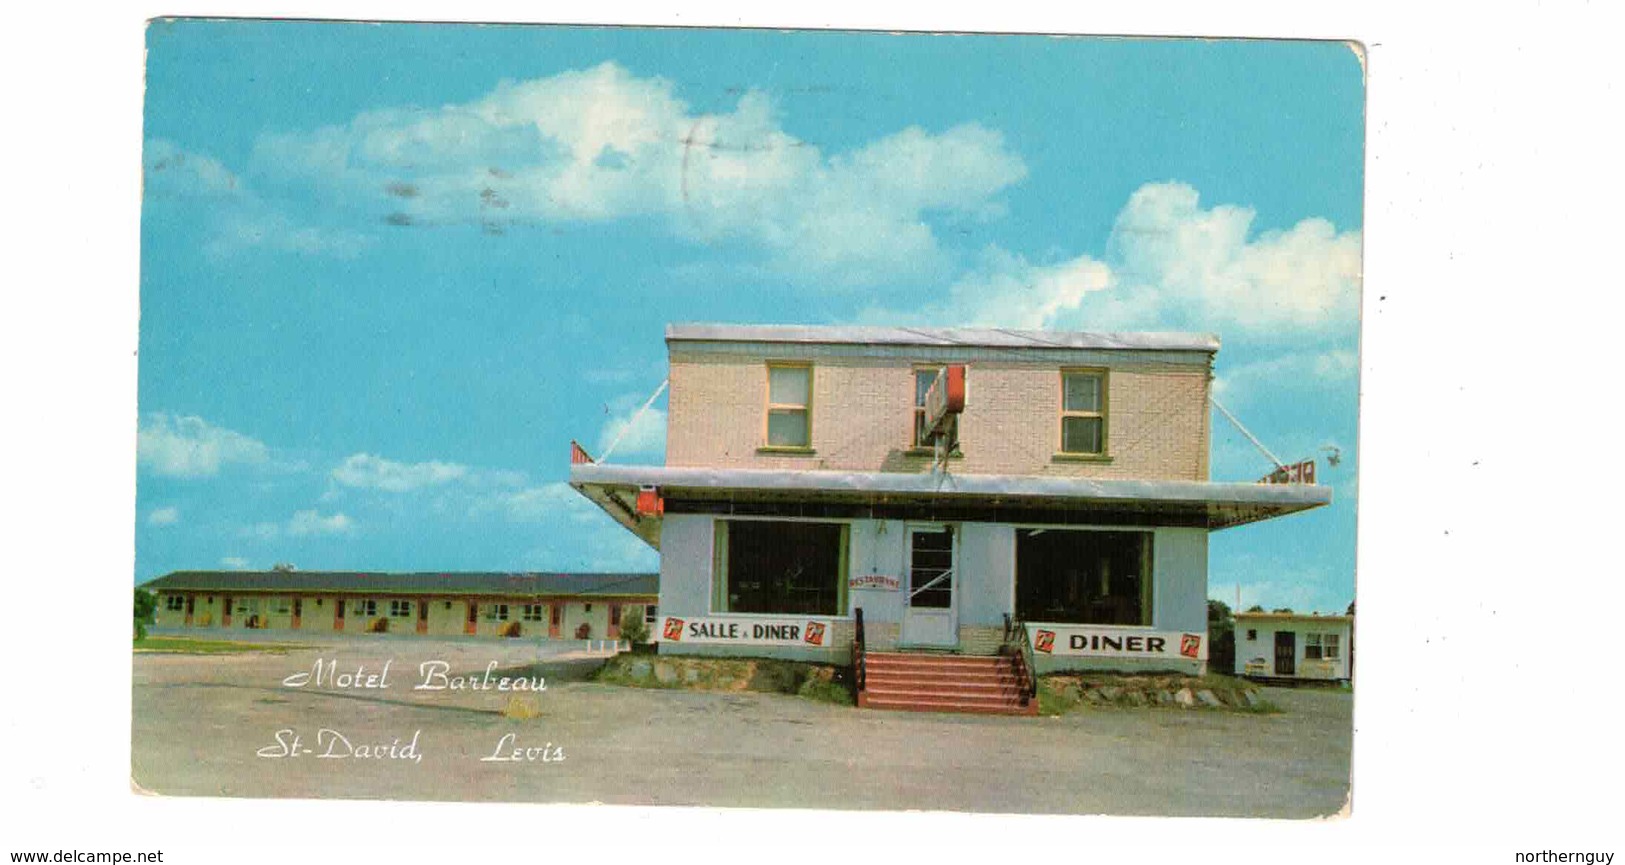 ST. DAVID, Levis, Quebec, Canada, Motel Barbeau, 1958 Chrome Postcard - Levis